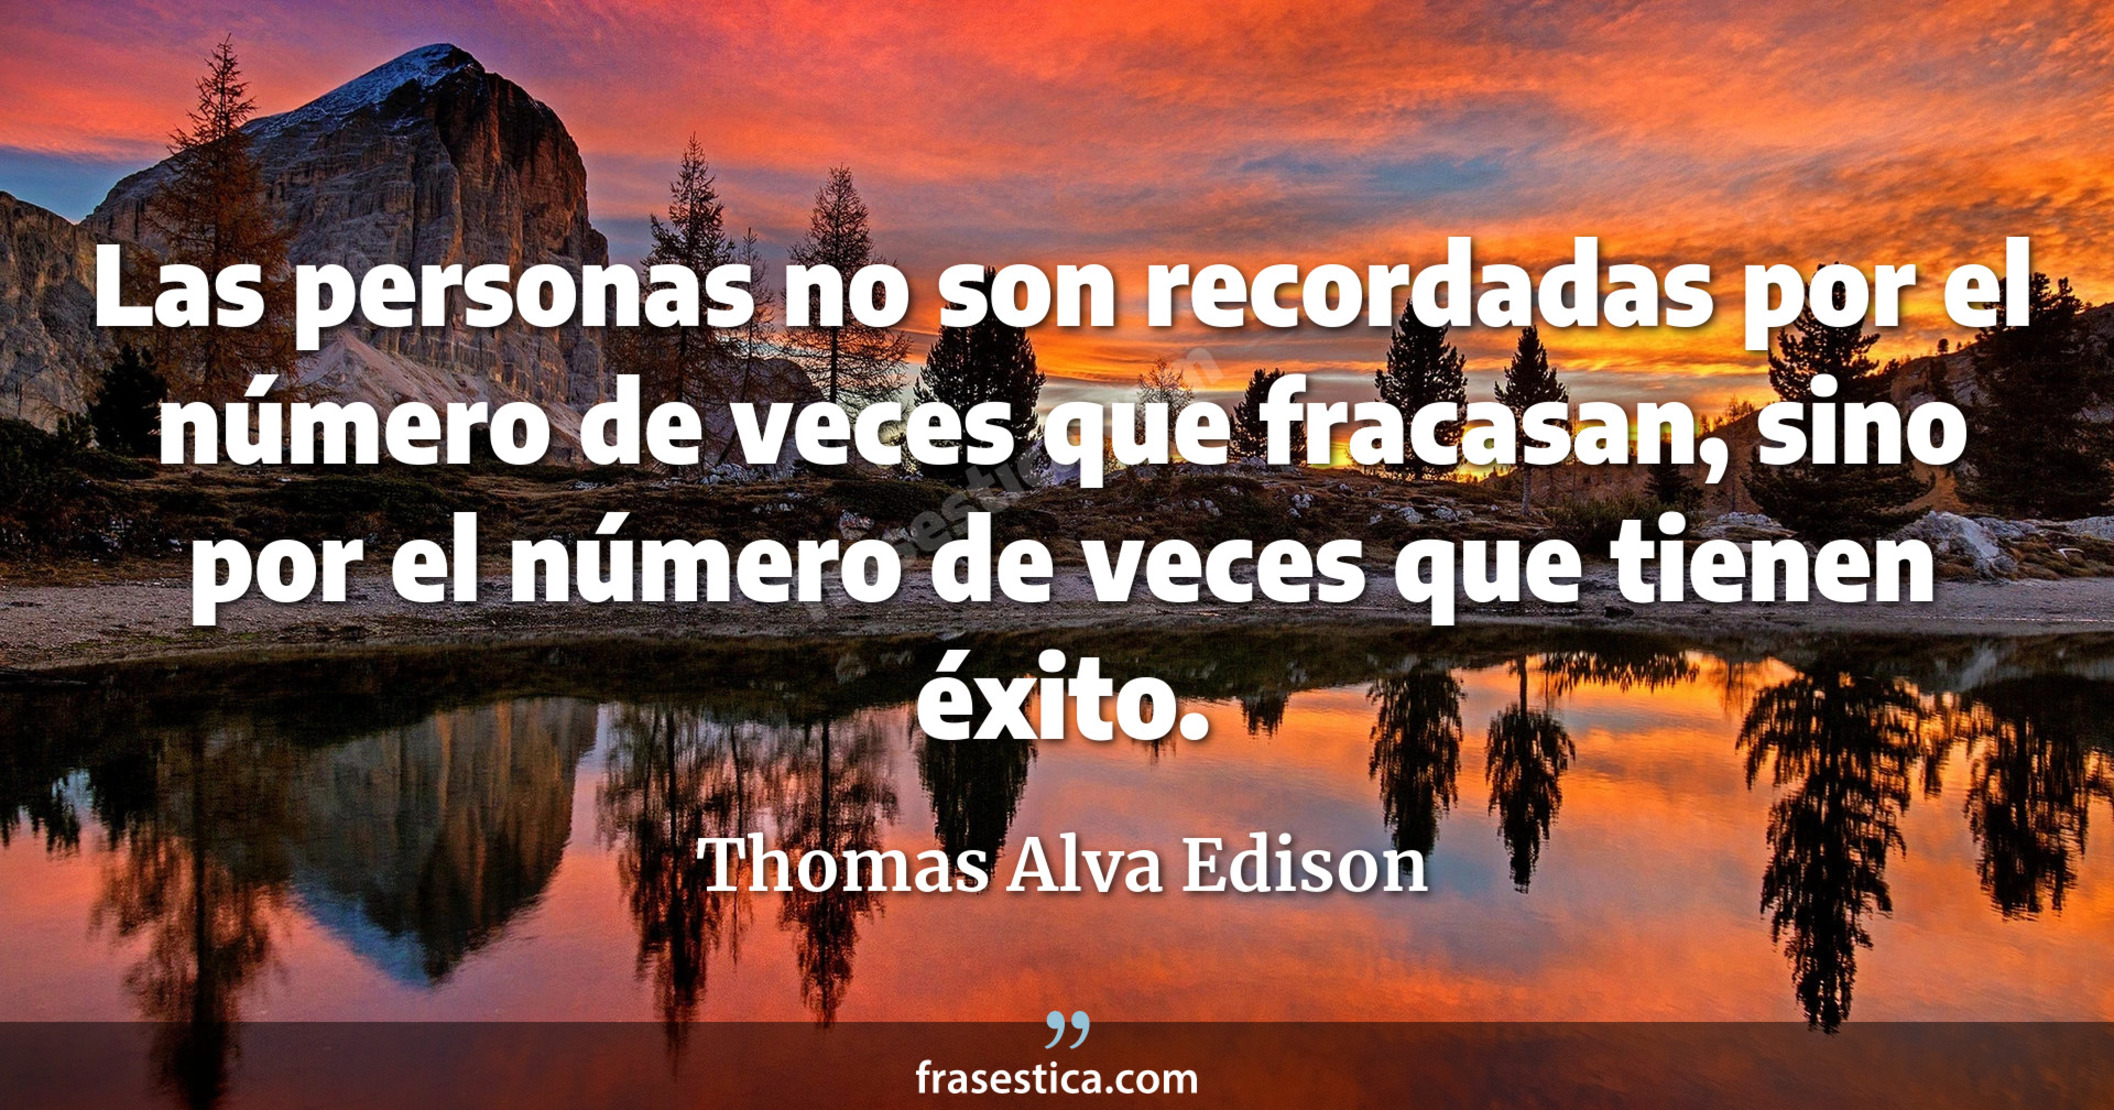 Las personas no son recordadas por el número de veces que fracasan, sino por el número de veces que tienen éxito. - Thomas Alva Edison